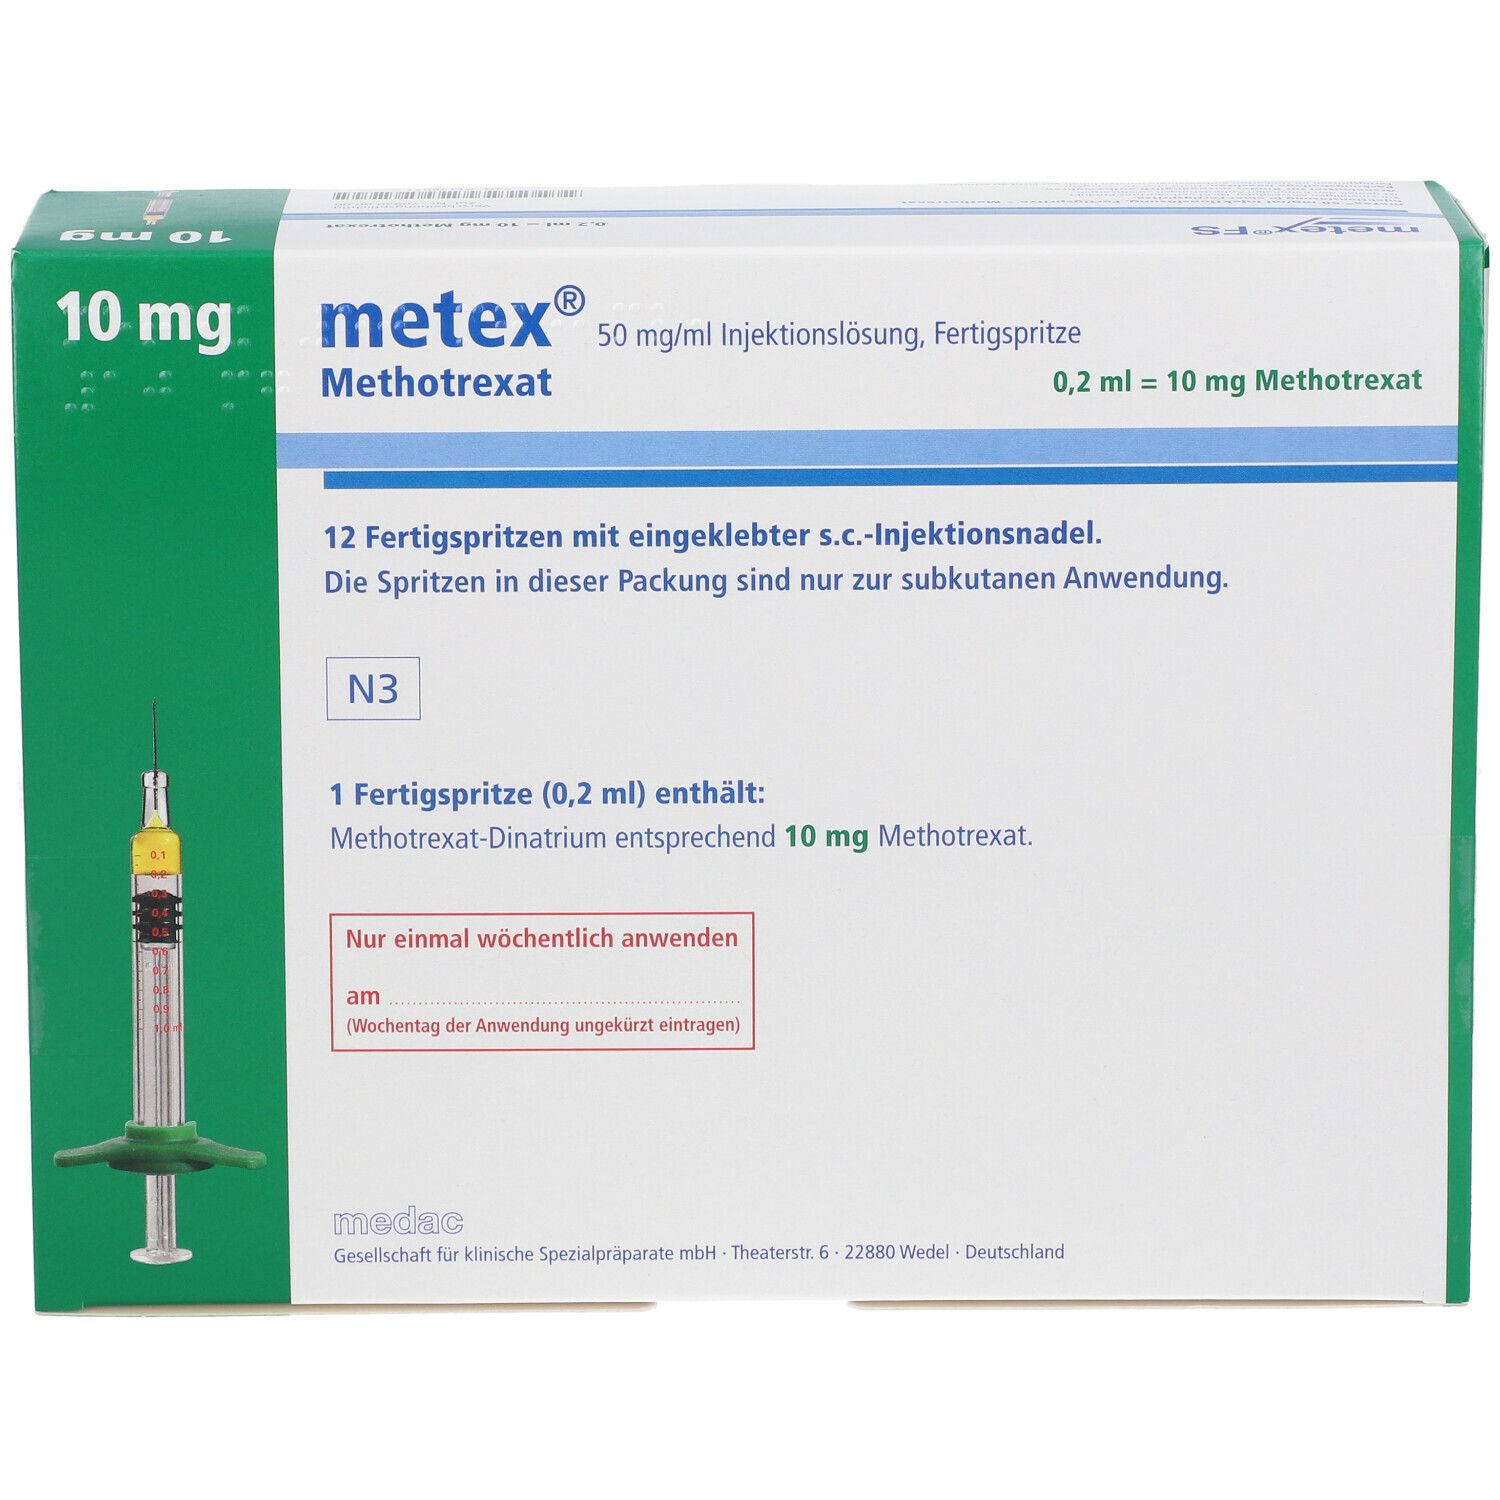 metex® FS 10 mg